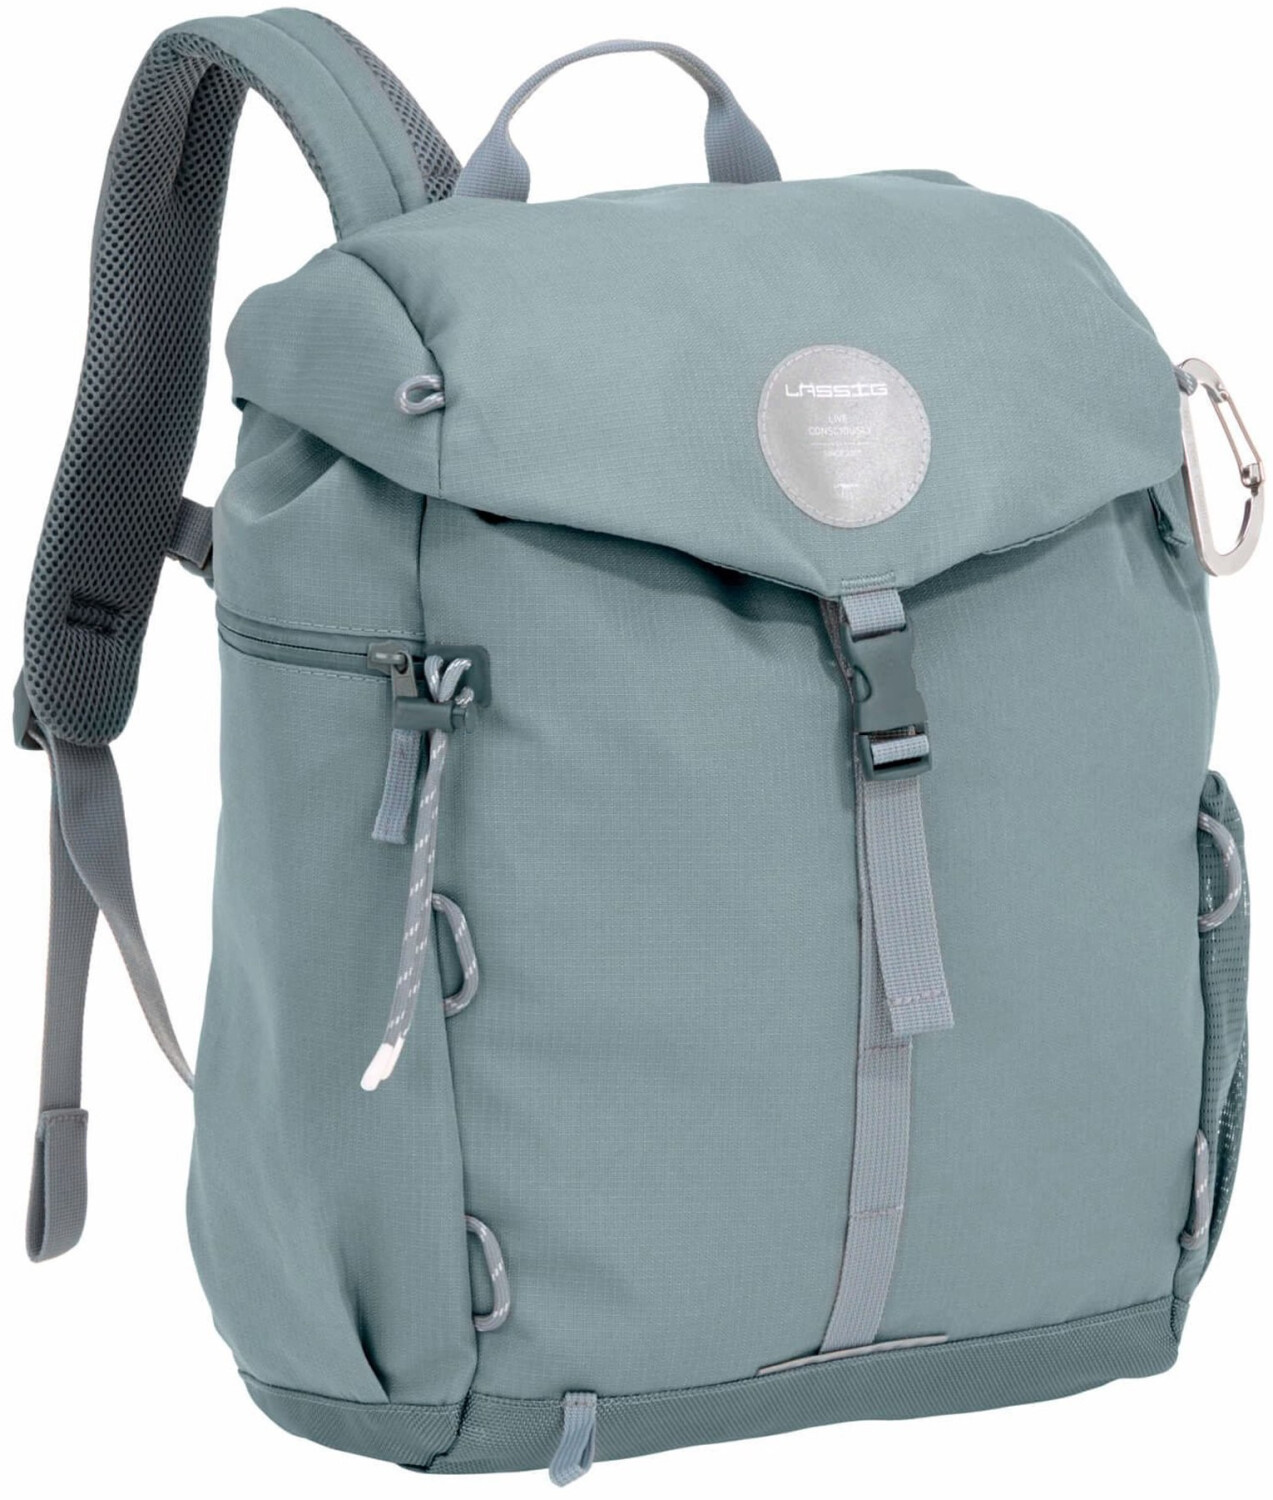 Lässig Green Label Backpack bei Outdoor 76,99 € Preisvergleich ab 